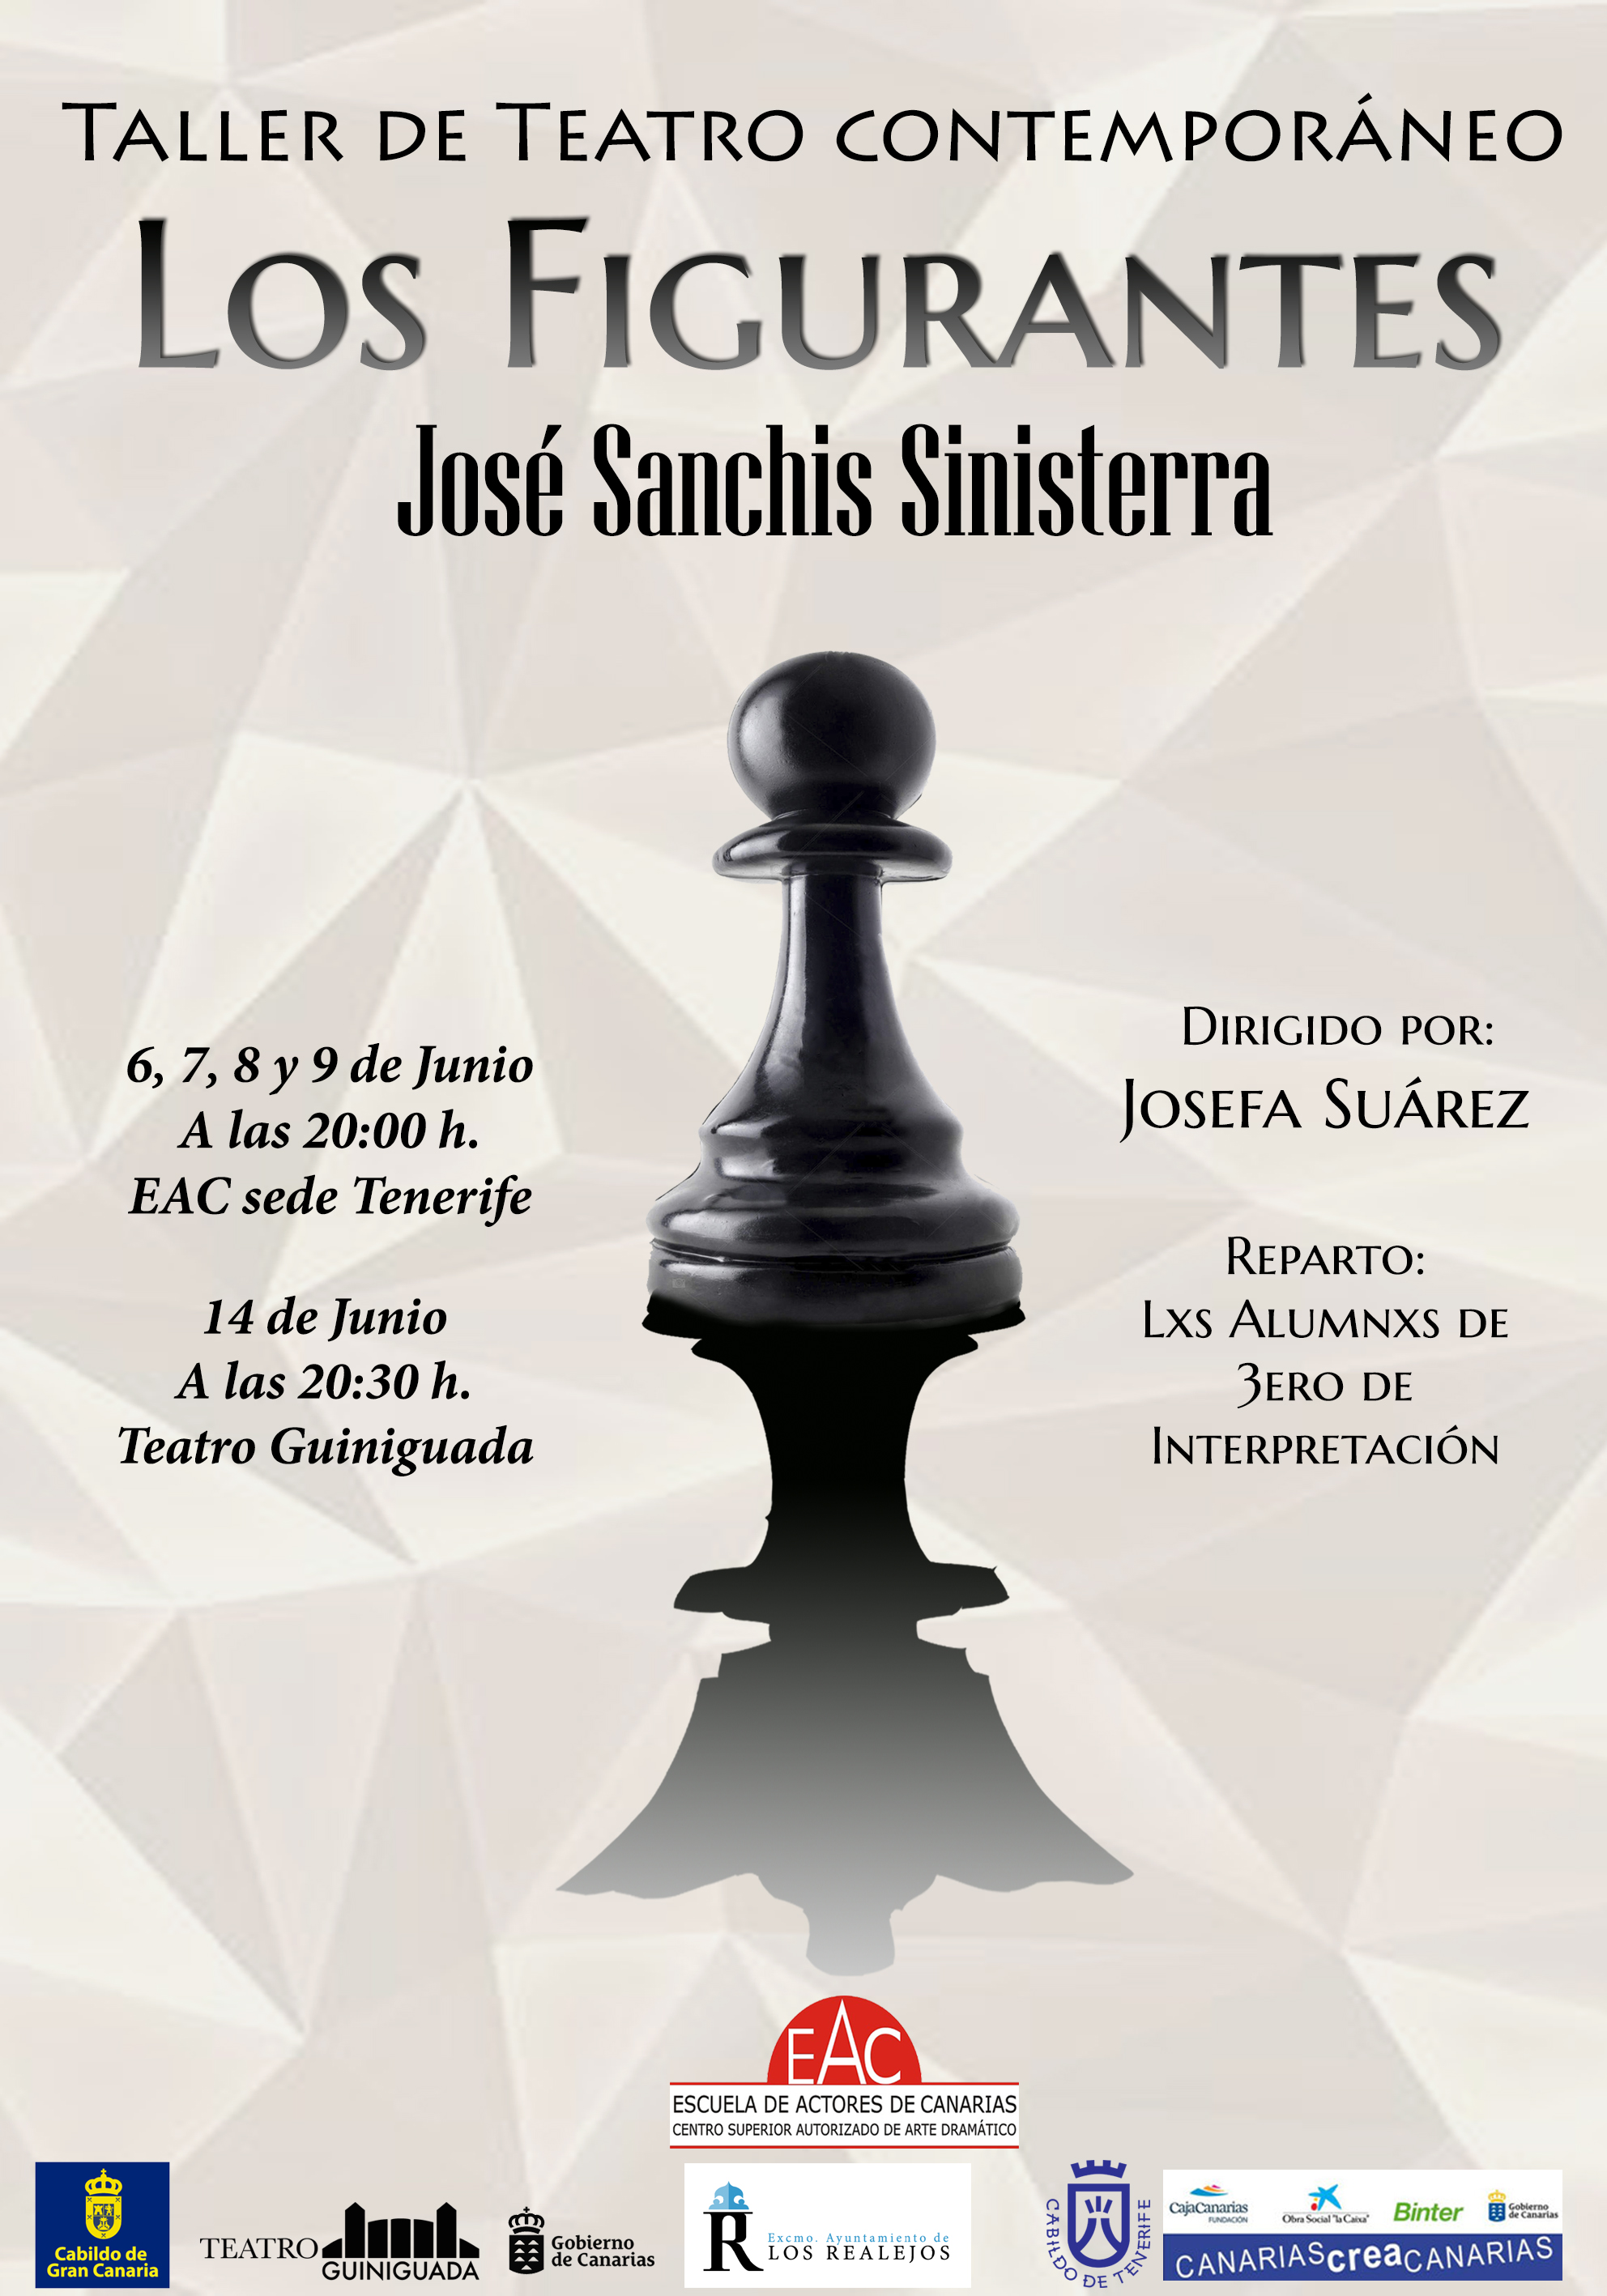 Estreno de ‘Los Figurantes’ de José Sanchis Sinisterra